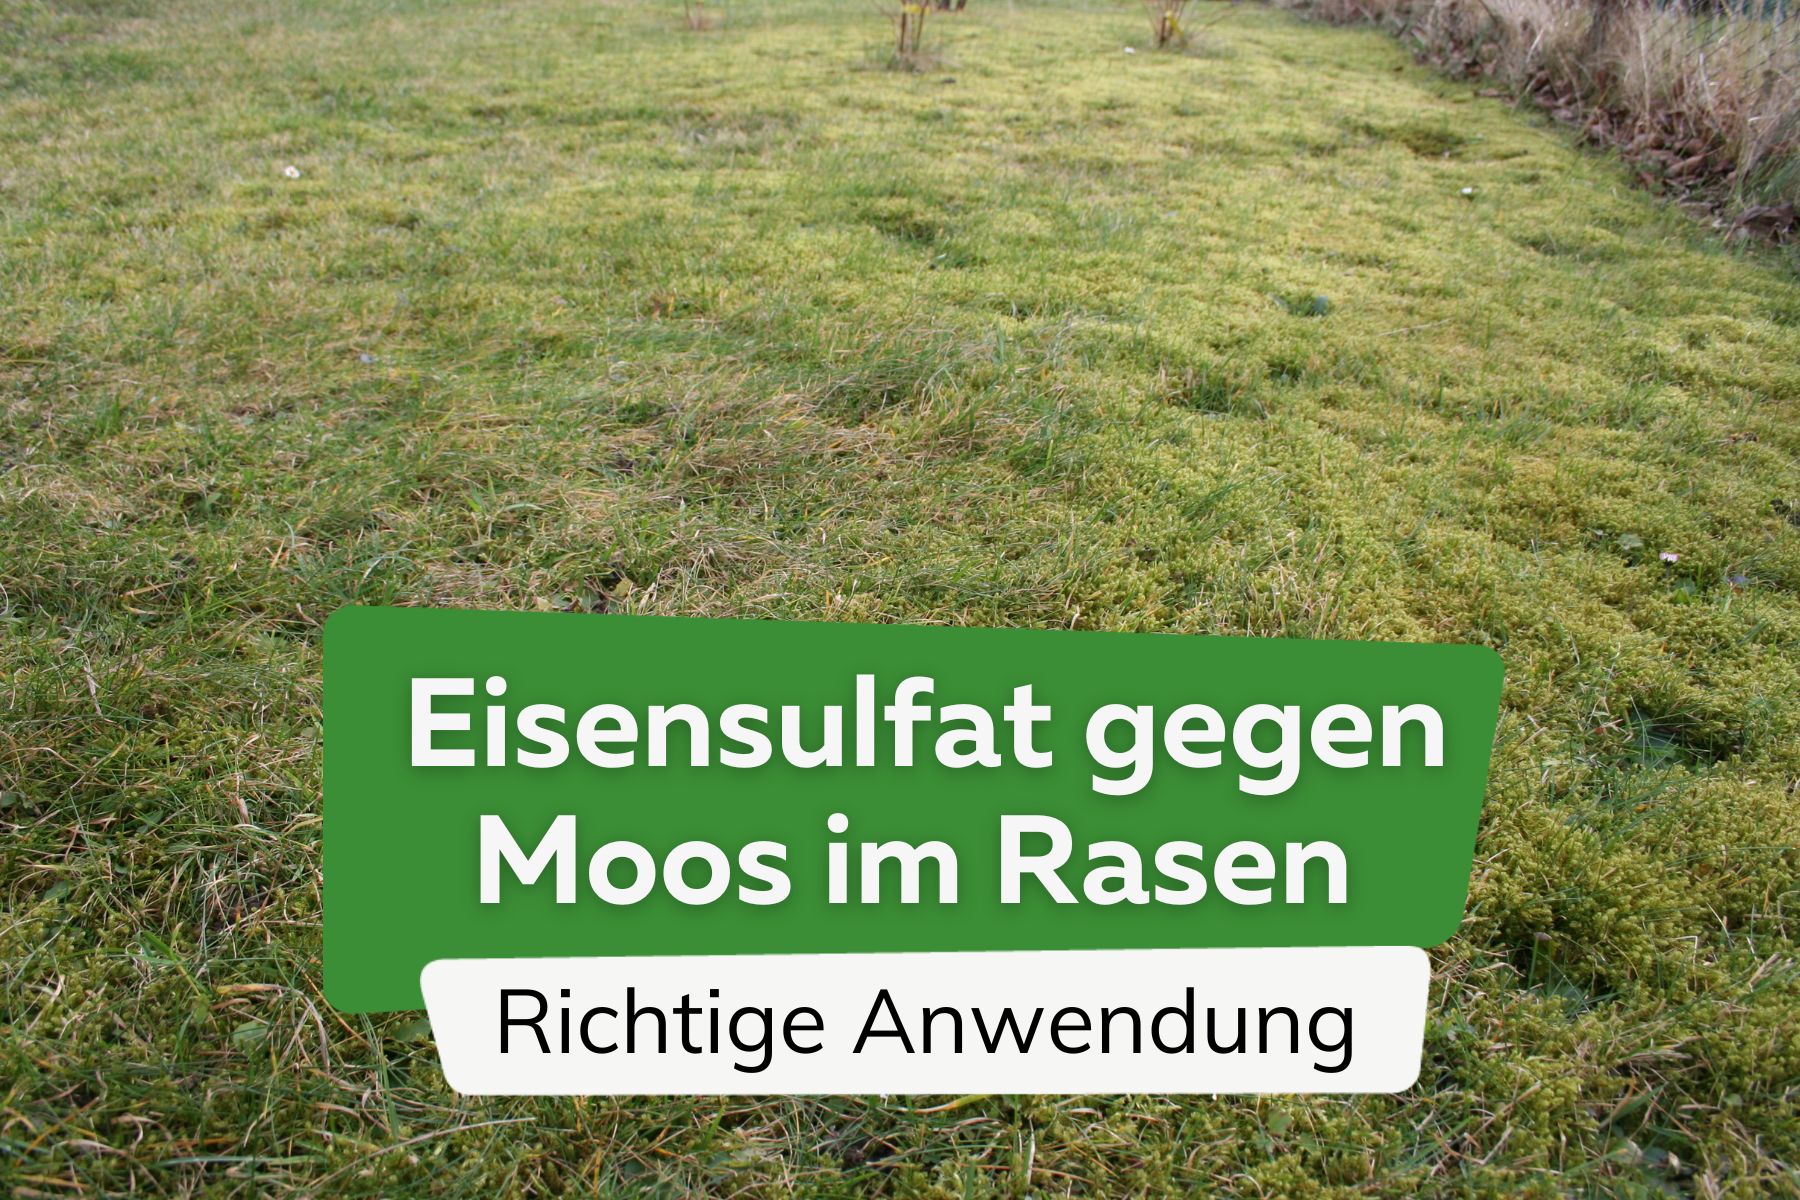 Eisensulfat gegen Moos im Rasen richtig anwenden